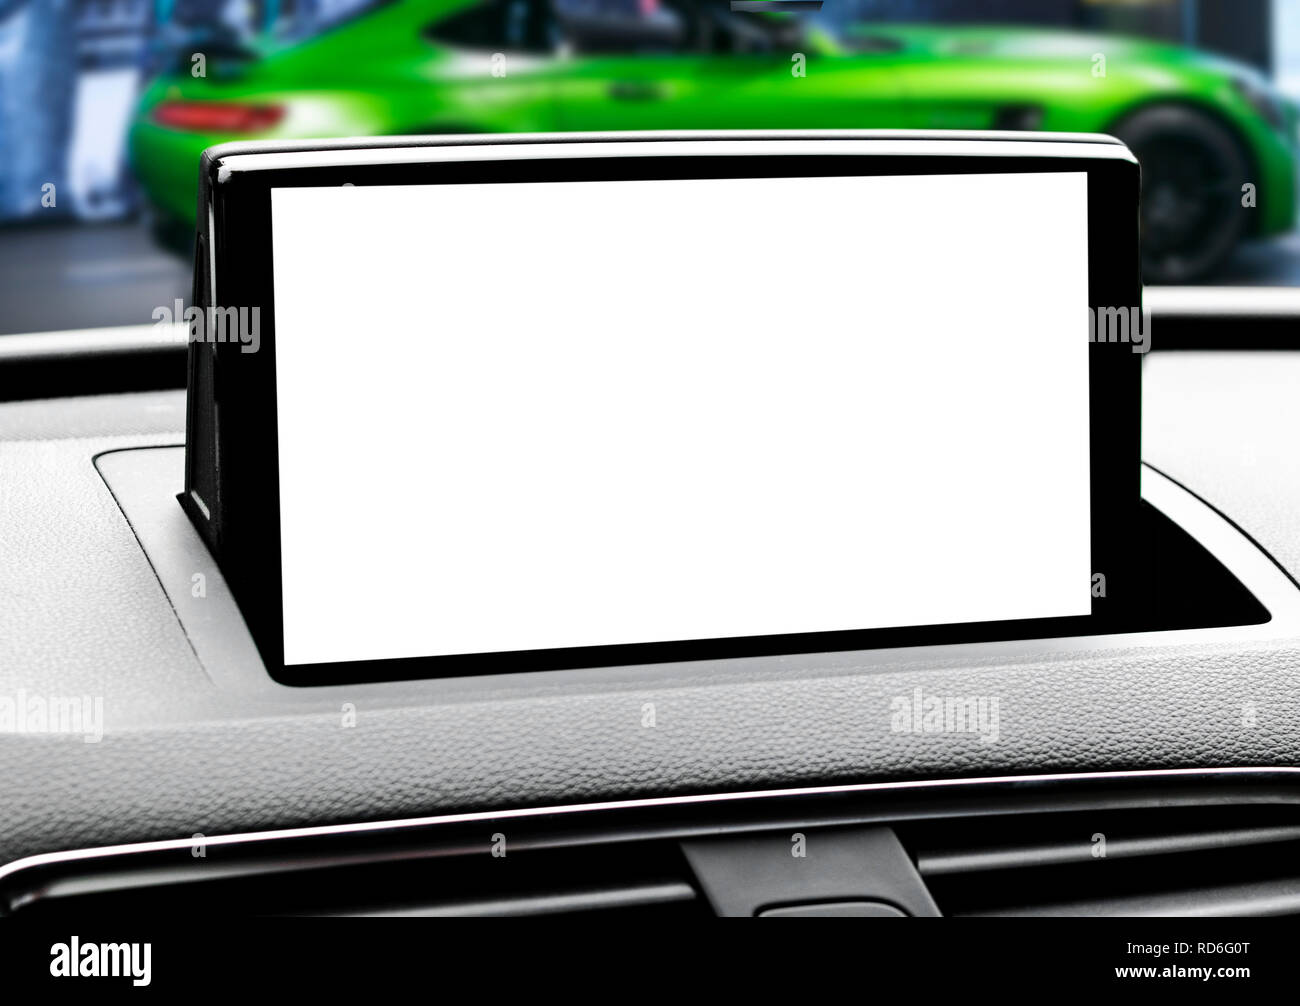 Monitor im Auto mit isolierten leerer Bildschirm verwenden Sie für die  Navigation Karten und GPS. Auf weiß mit Freistellungspfad isoliert. Von  Autoteilen. Moderne Innenraum de Stockfotografie - Alamy